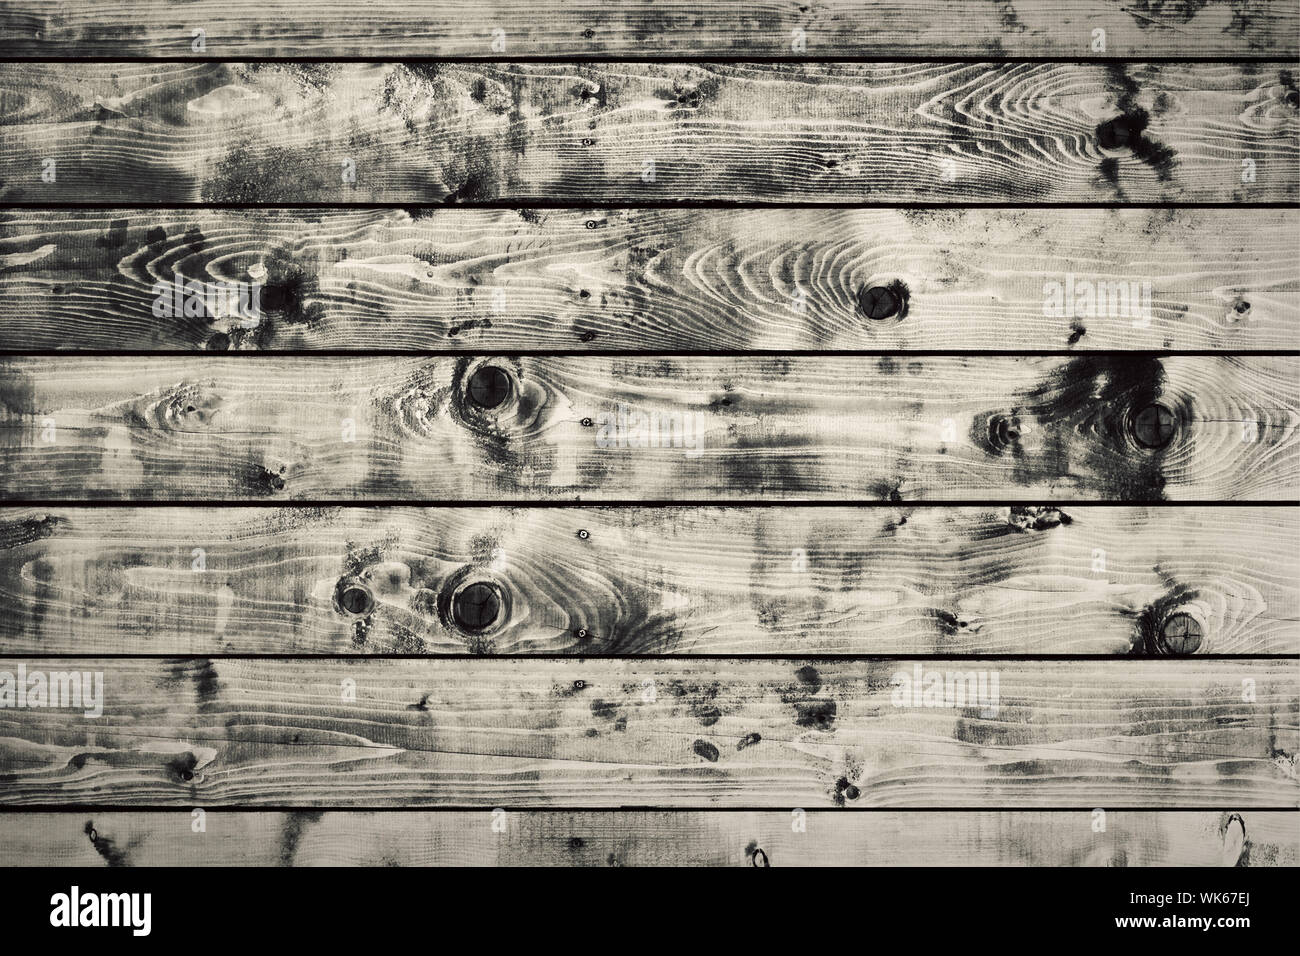 Hình ảnh nền gỗ cũ trông thật đơn giản nhưng đầy quyến rũ. Với đường vân ốc đầy bất đối xứng và màu sắc ấm áp của gỗ, bức ảnh hứa hẹn mang đến một không gian đầy phóng khoáng và tự nhiên. Hãy truy cập ảnh để tận hưởng nét độc đáo của hình nền gỗ cũ này.